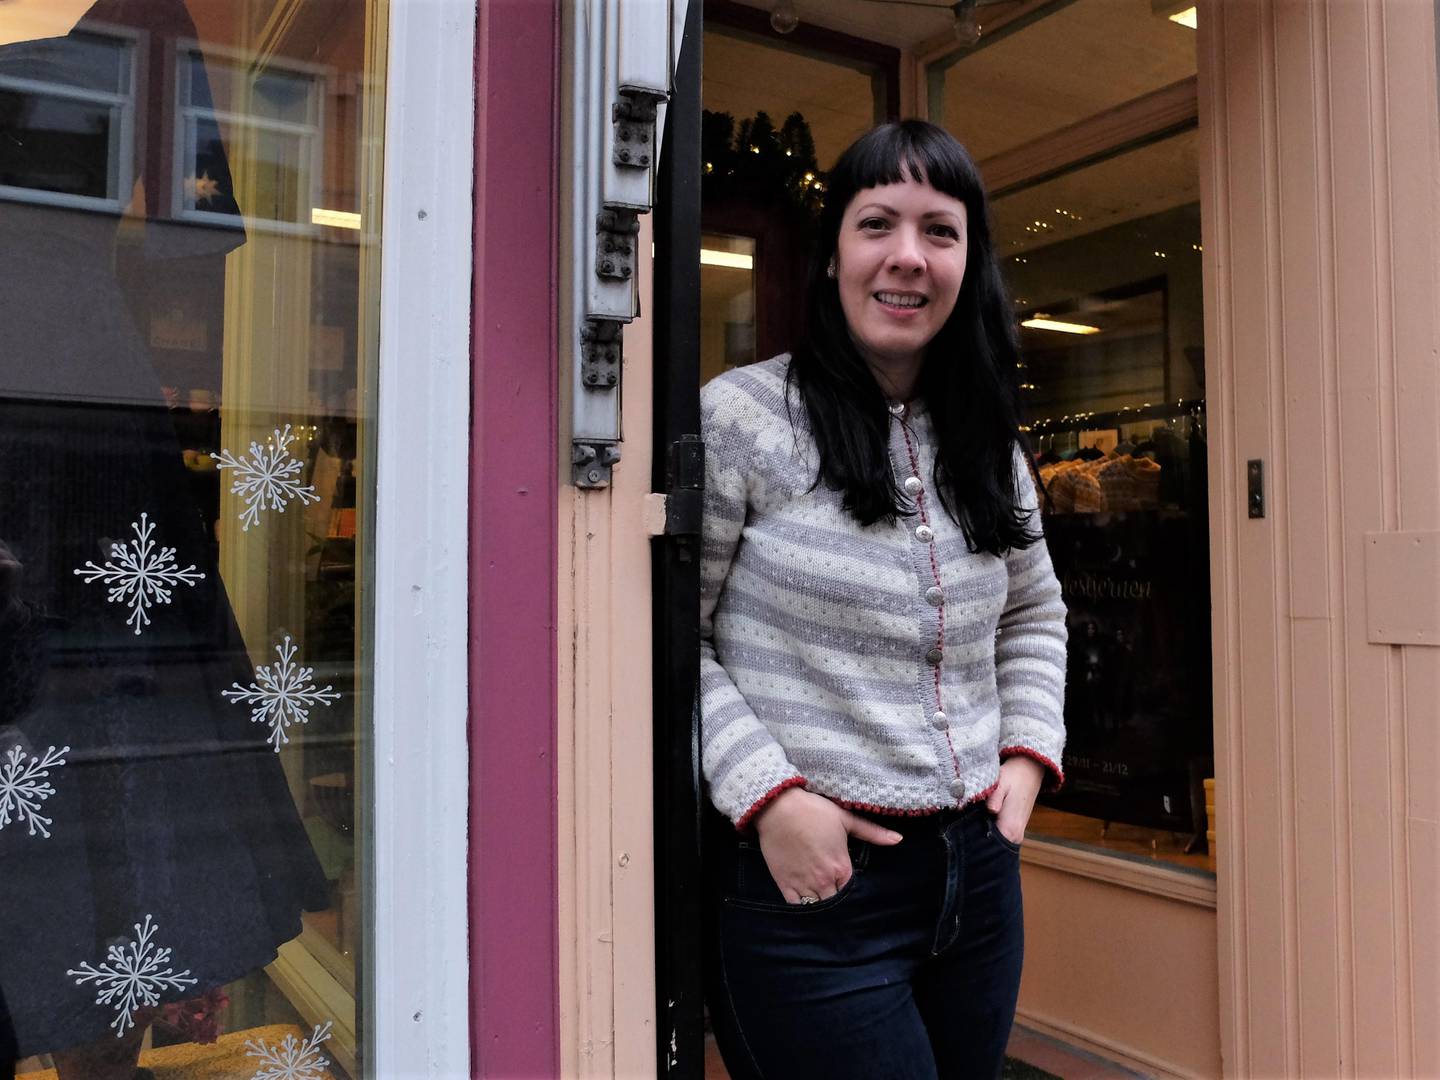 Sunniva Ferrada, innehaver av klesbutikken Retropiken, er veldig glad for å kunne drive butikk i Drammens kanskje mest særegne handlegate - og ivrer for å bevare Tollbugatas genuine preg. Det er hun ikke alene om.